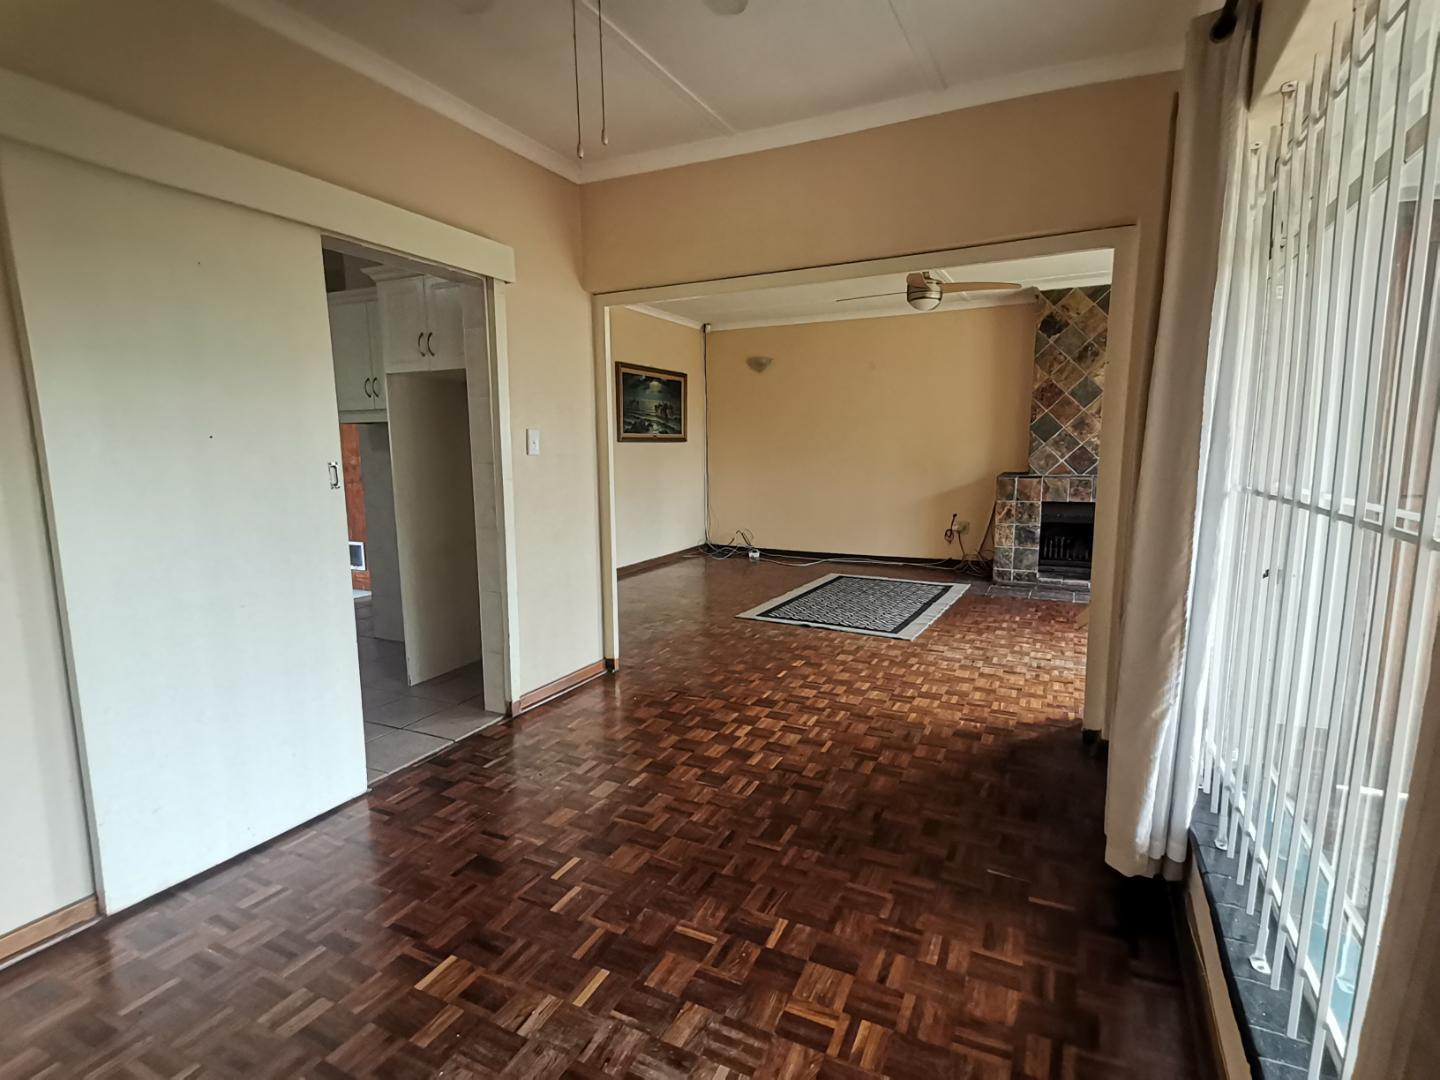 3 Bedroom Property for Sale in Blackridge KwaZulu-Natal